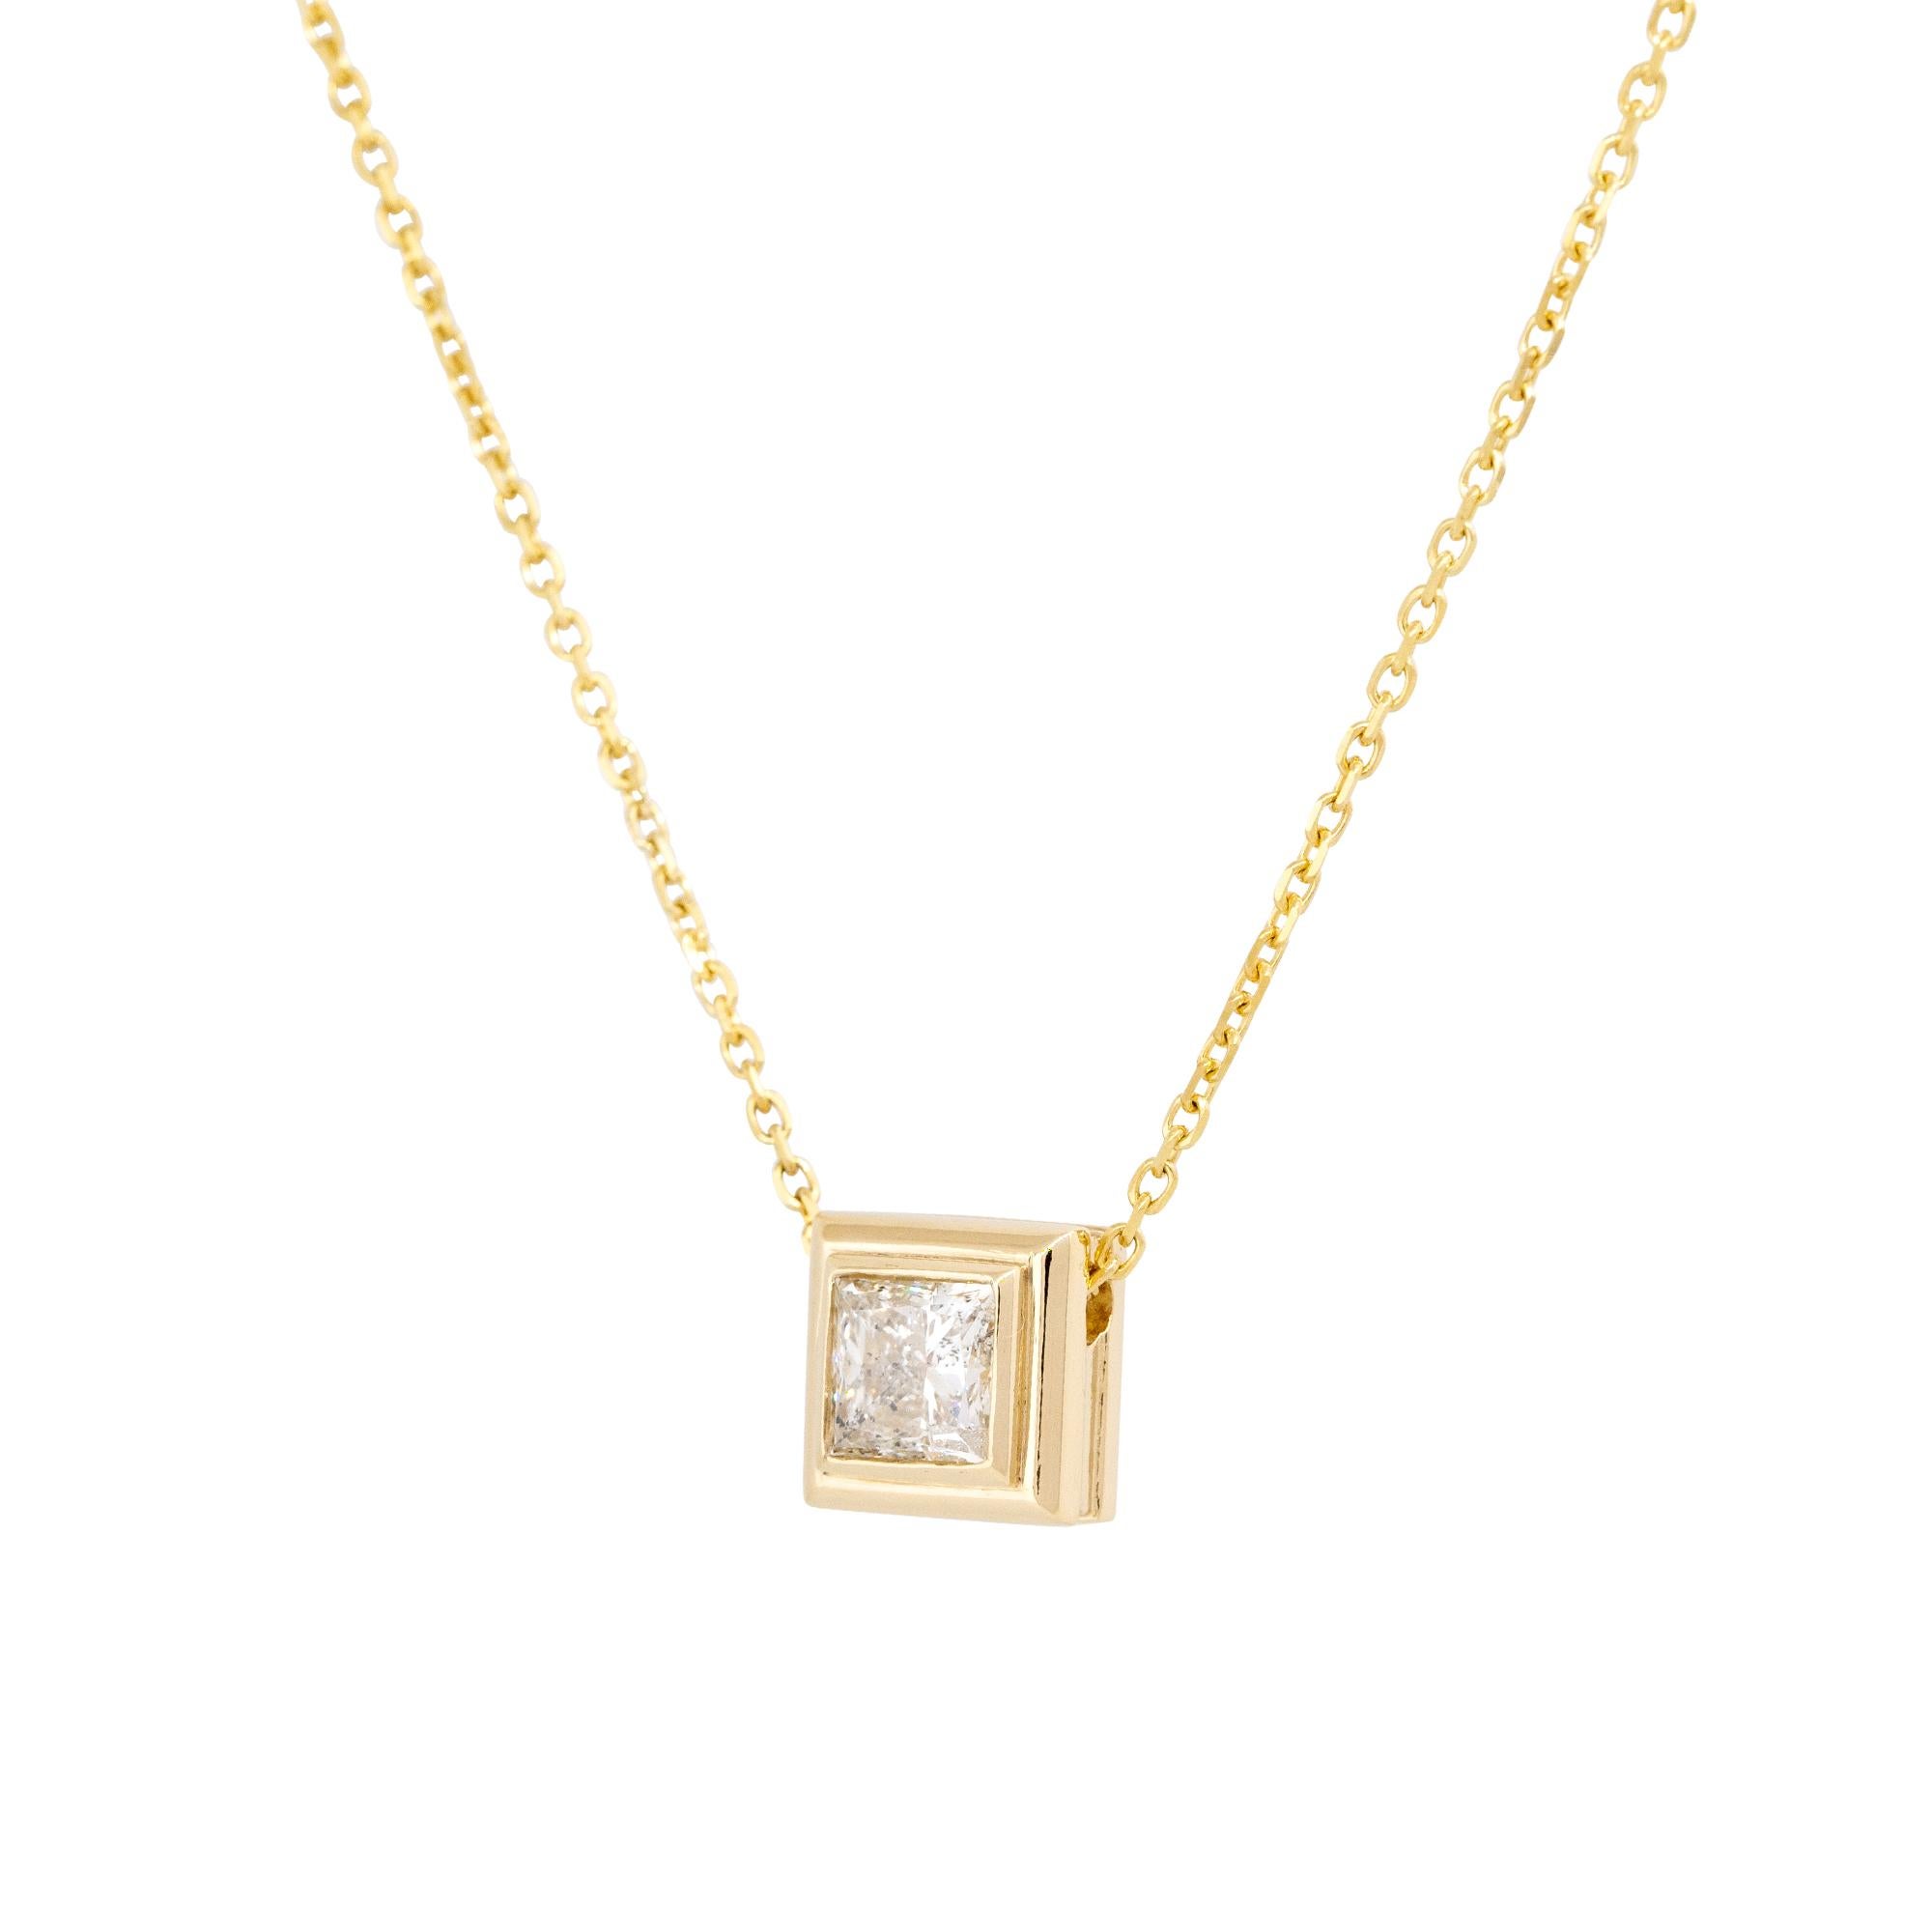 Ce ravissant pendentif en diamant de taille princesse est un bijou classique.  Elle est sertie dans de l'or jaune 14 carats et la pierre centrale présente une certaine couleur, approximativement J/K. Ce pendentif peut être porté en superposition